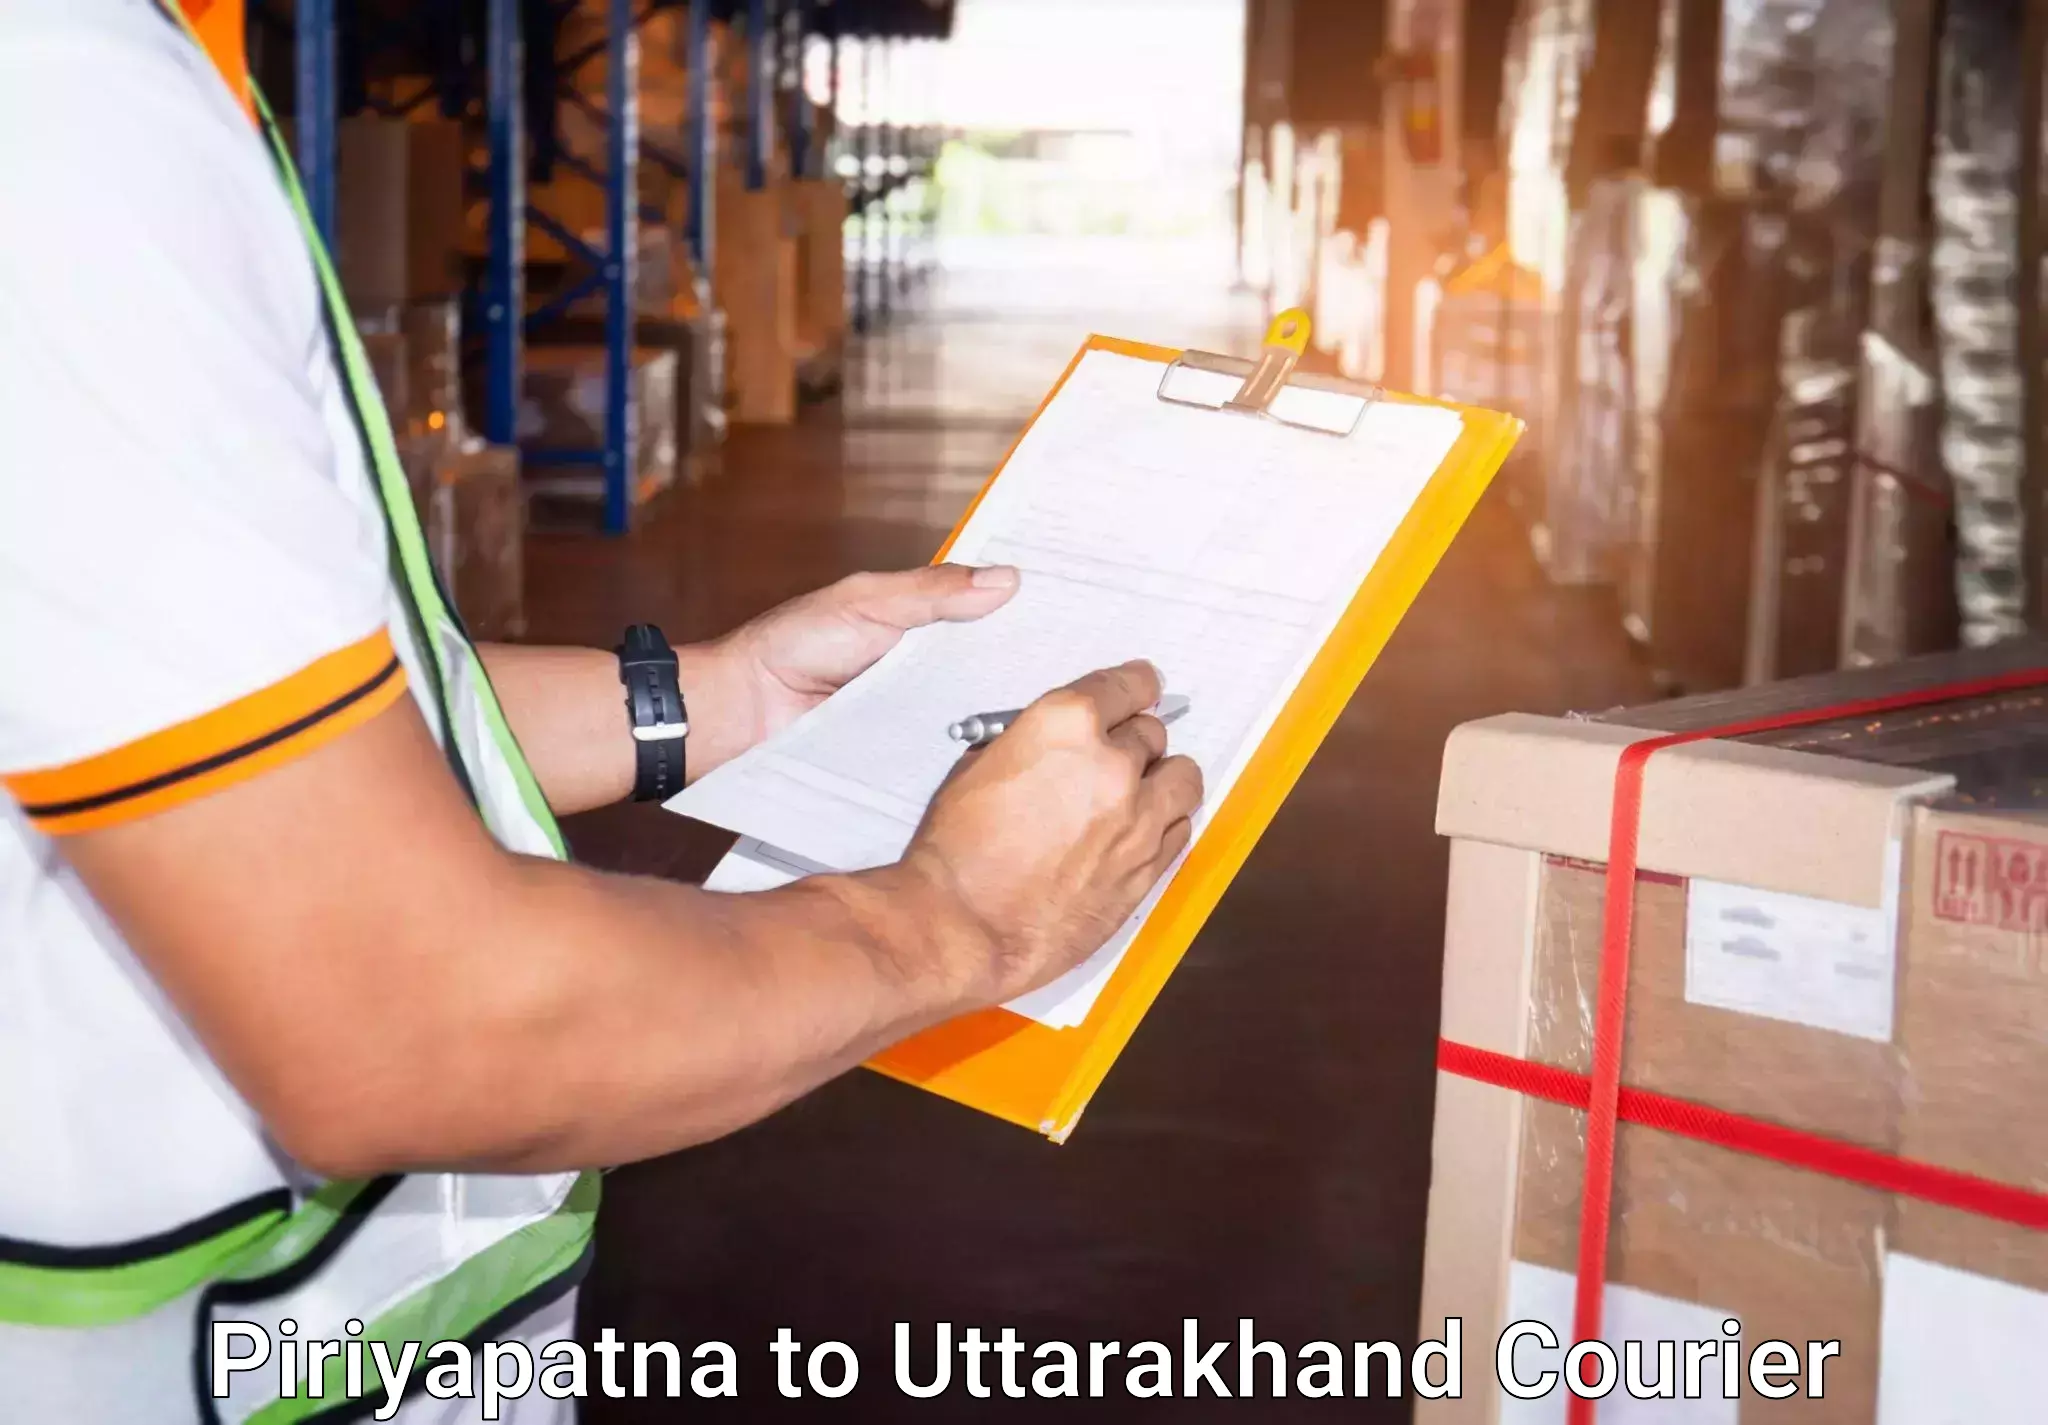 Luggage dispatch service Piriyapatna to Khatima